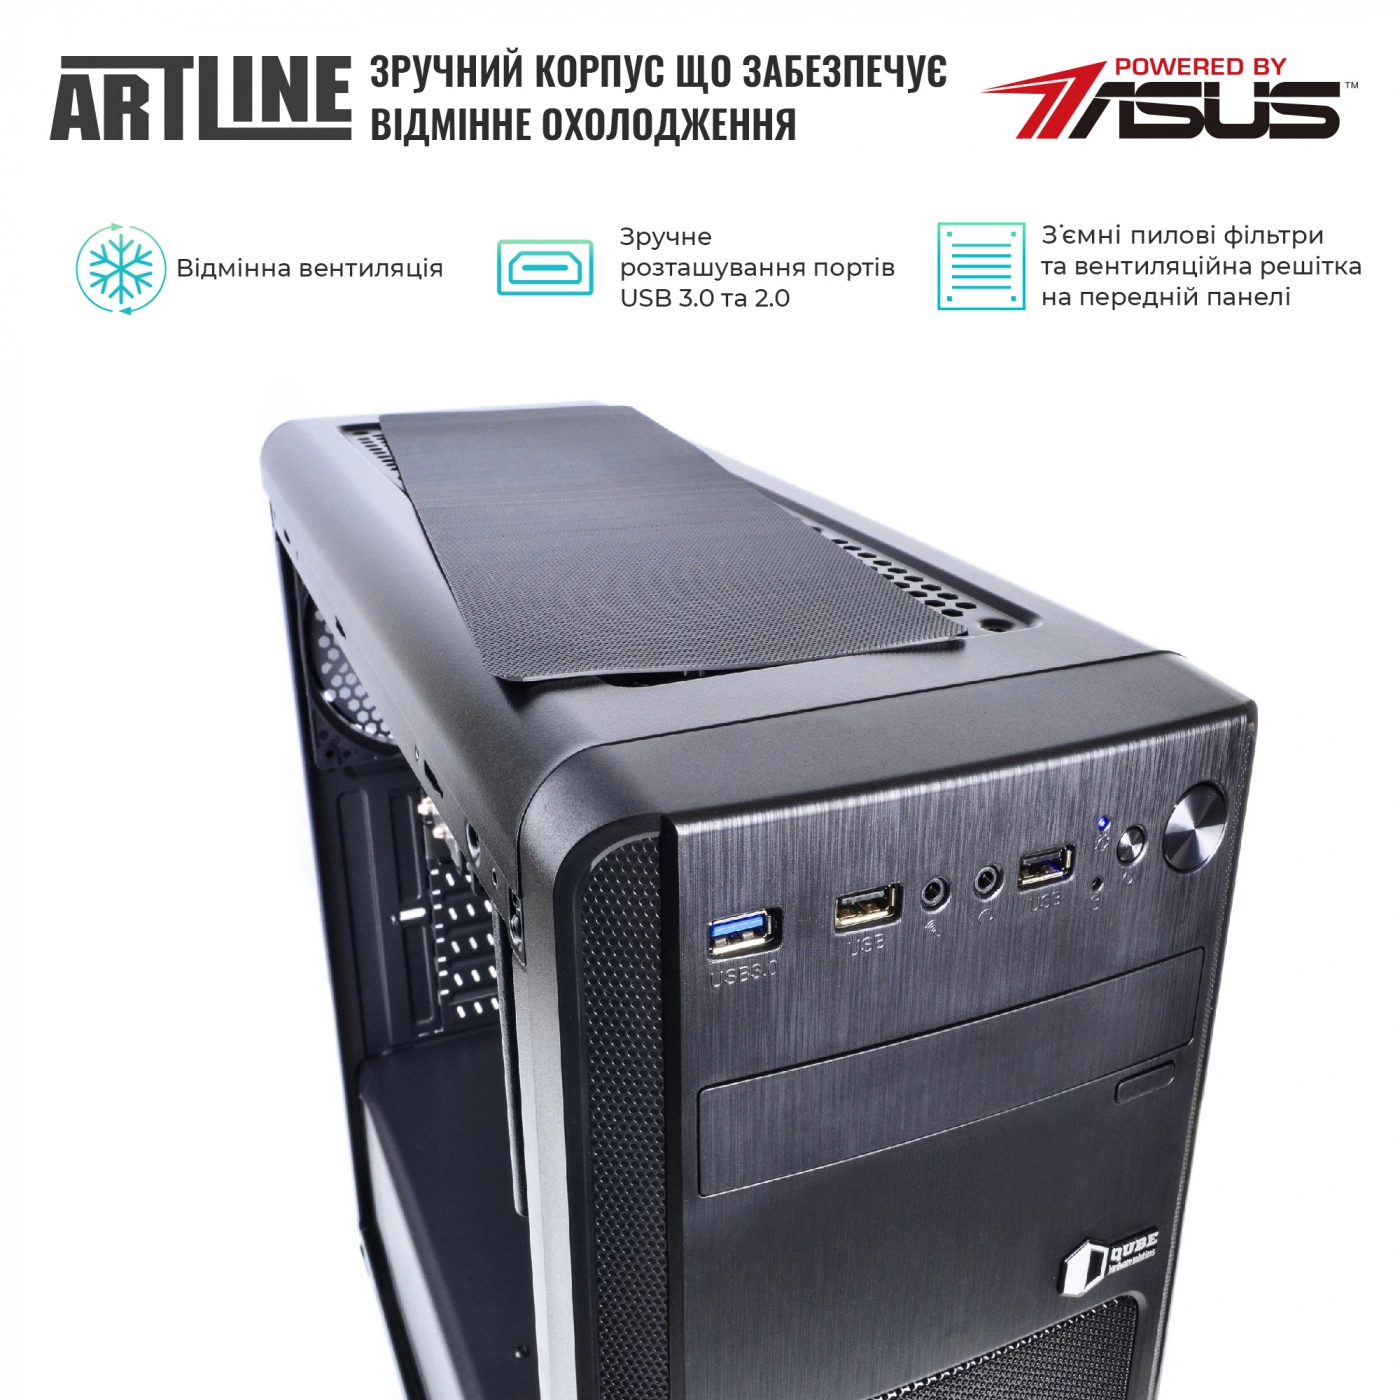 Купить Сервер ARTLINE Business T15v16 - фото 2